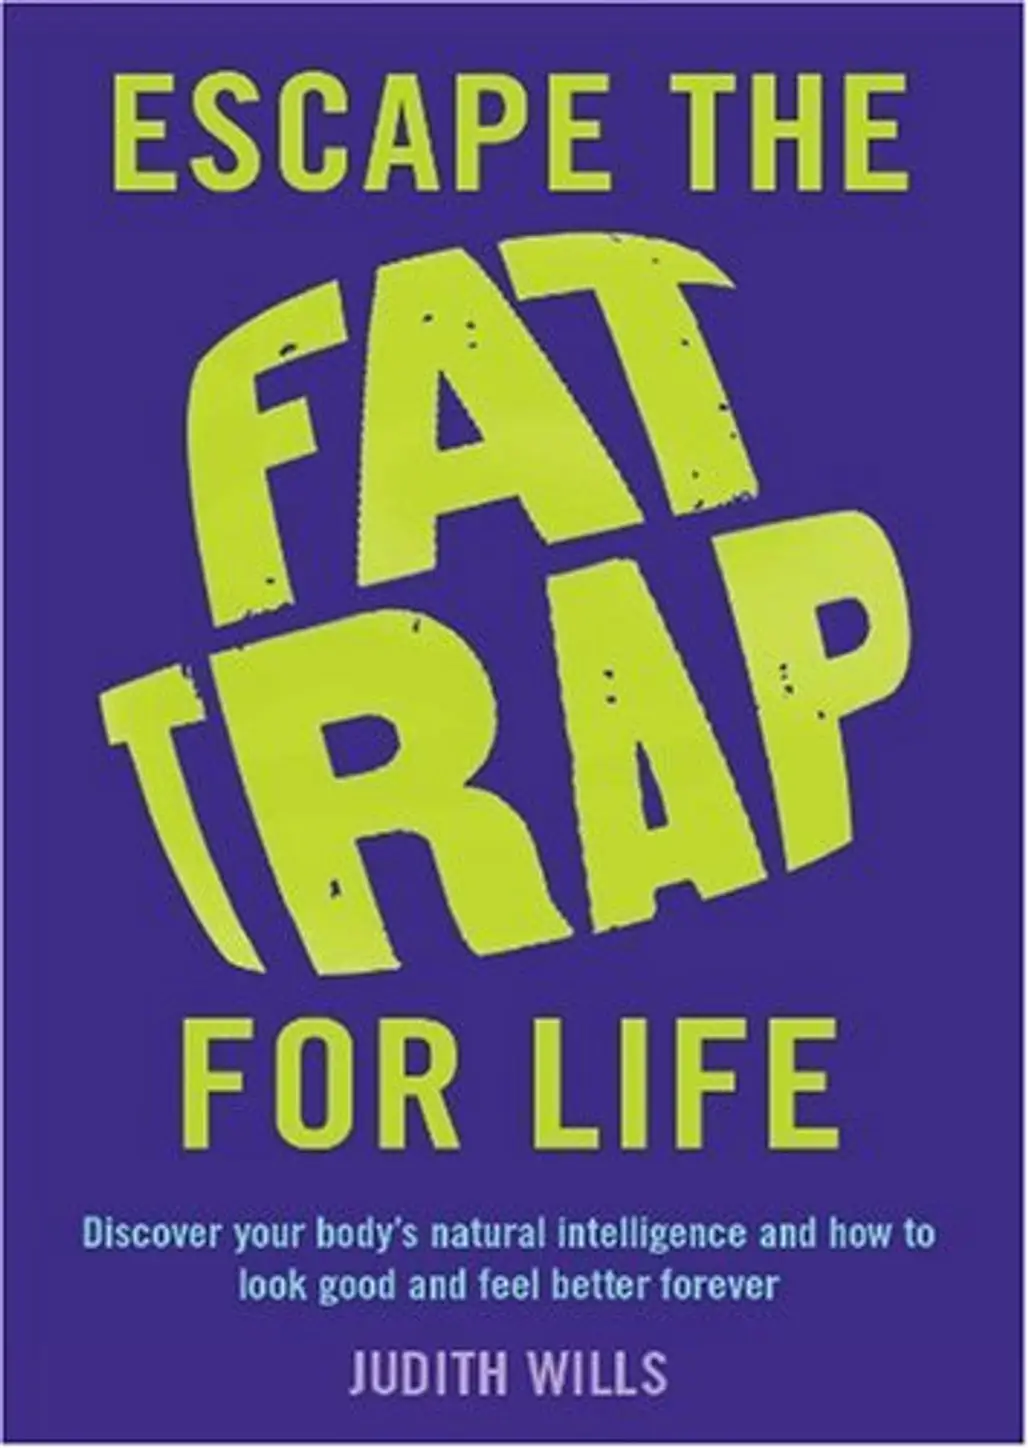 ‘Escape the Fat Trap for Life’